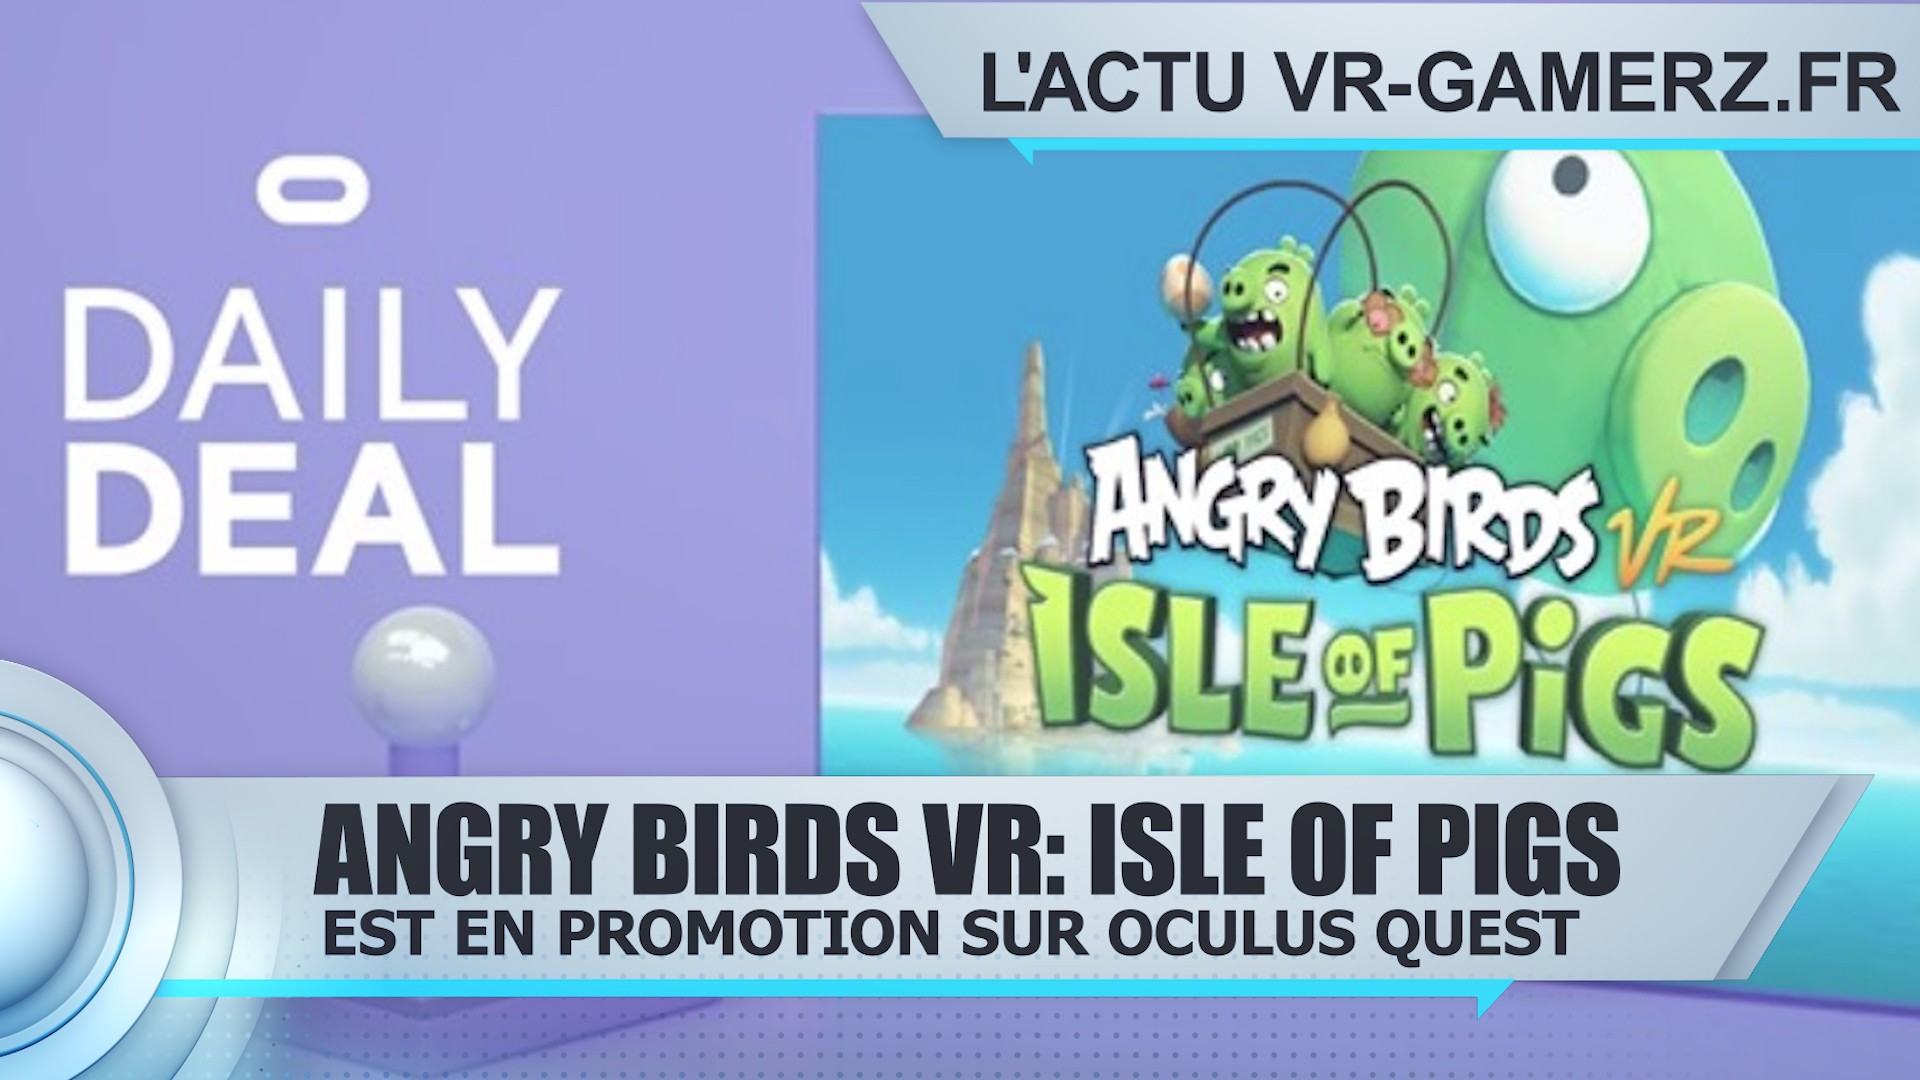 Angry Birds VR: Isle of Pigs est en promotion sur Oculus quest